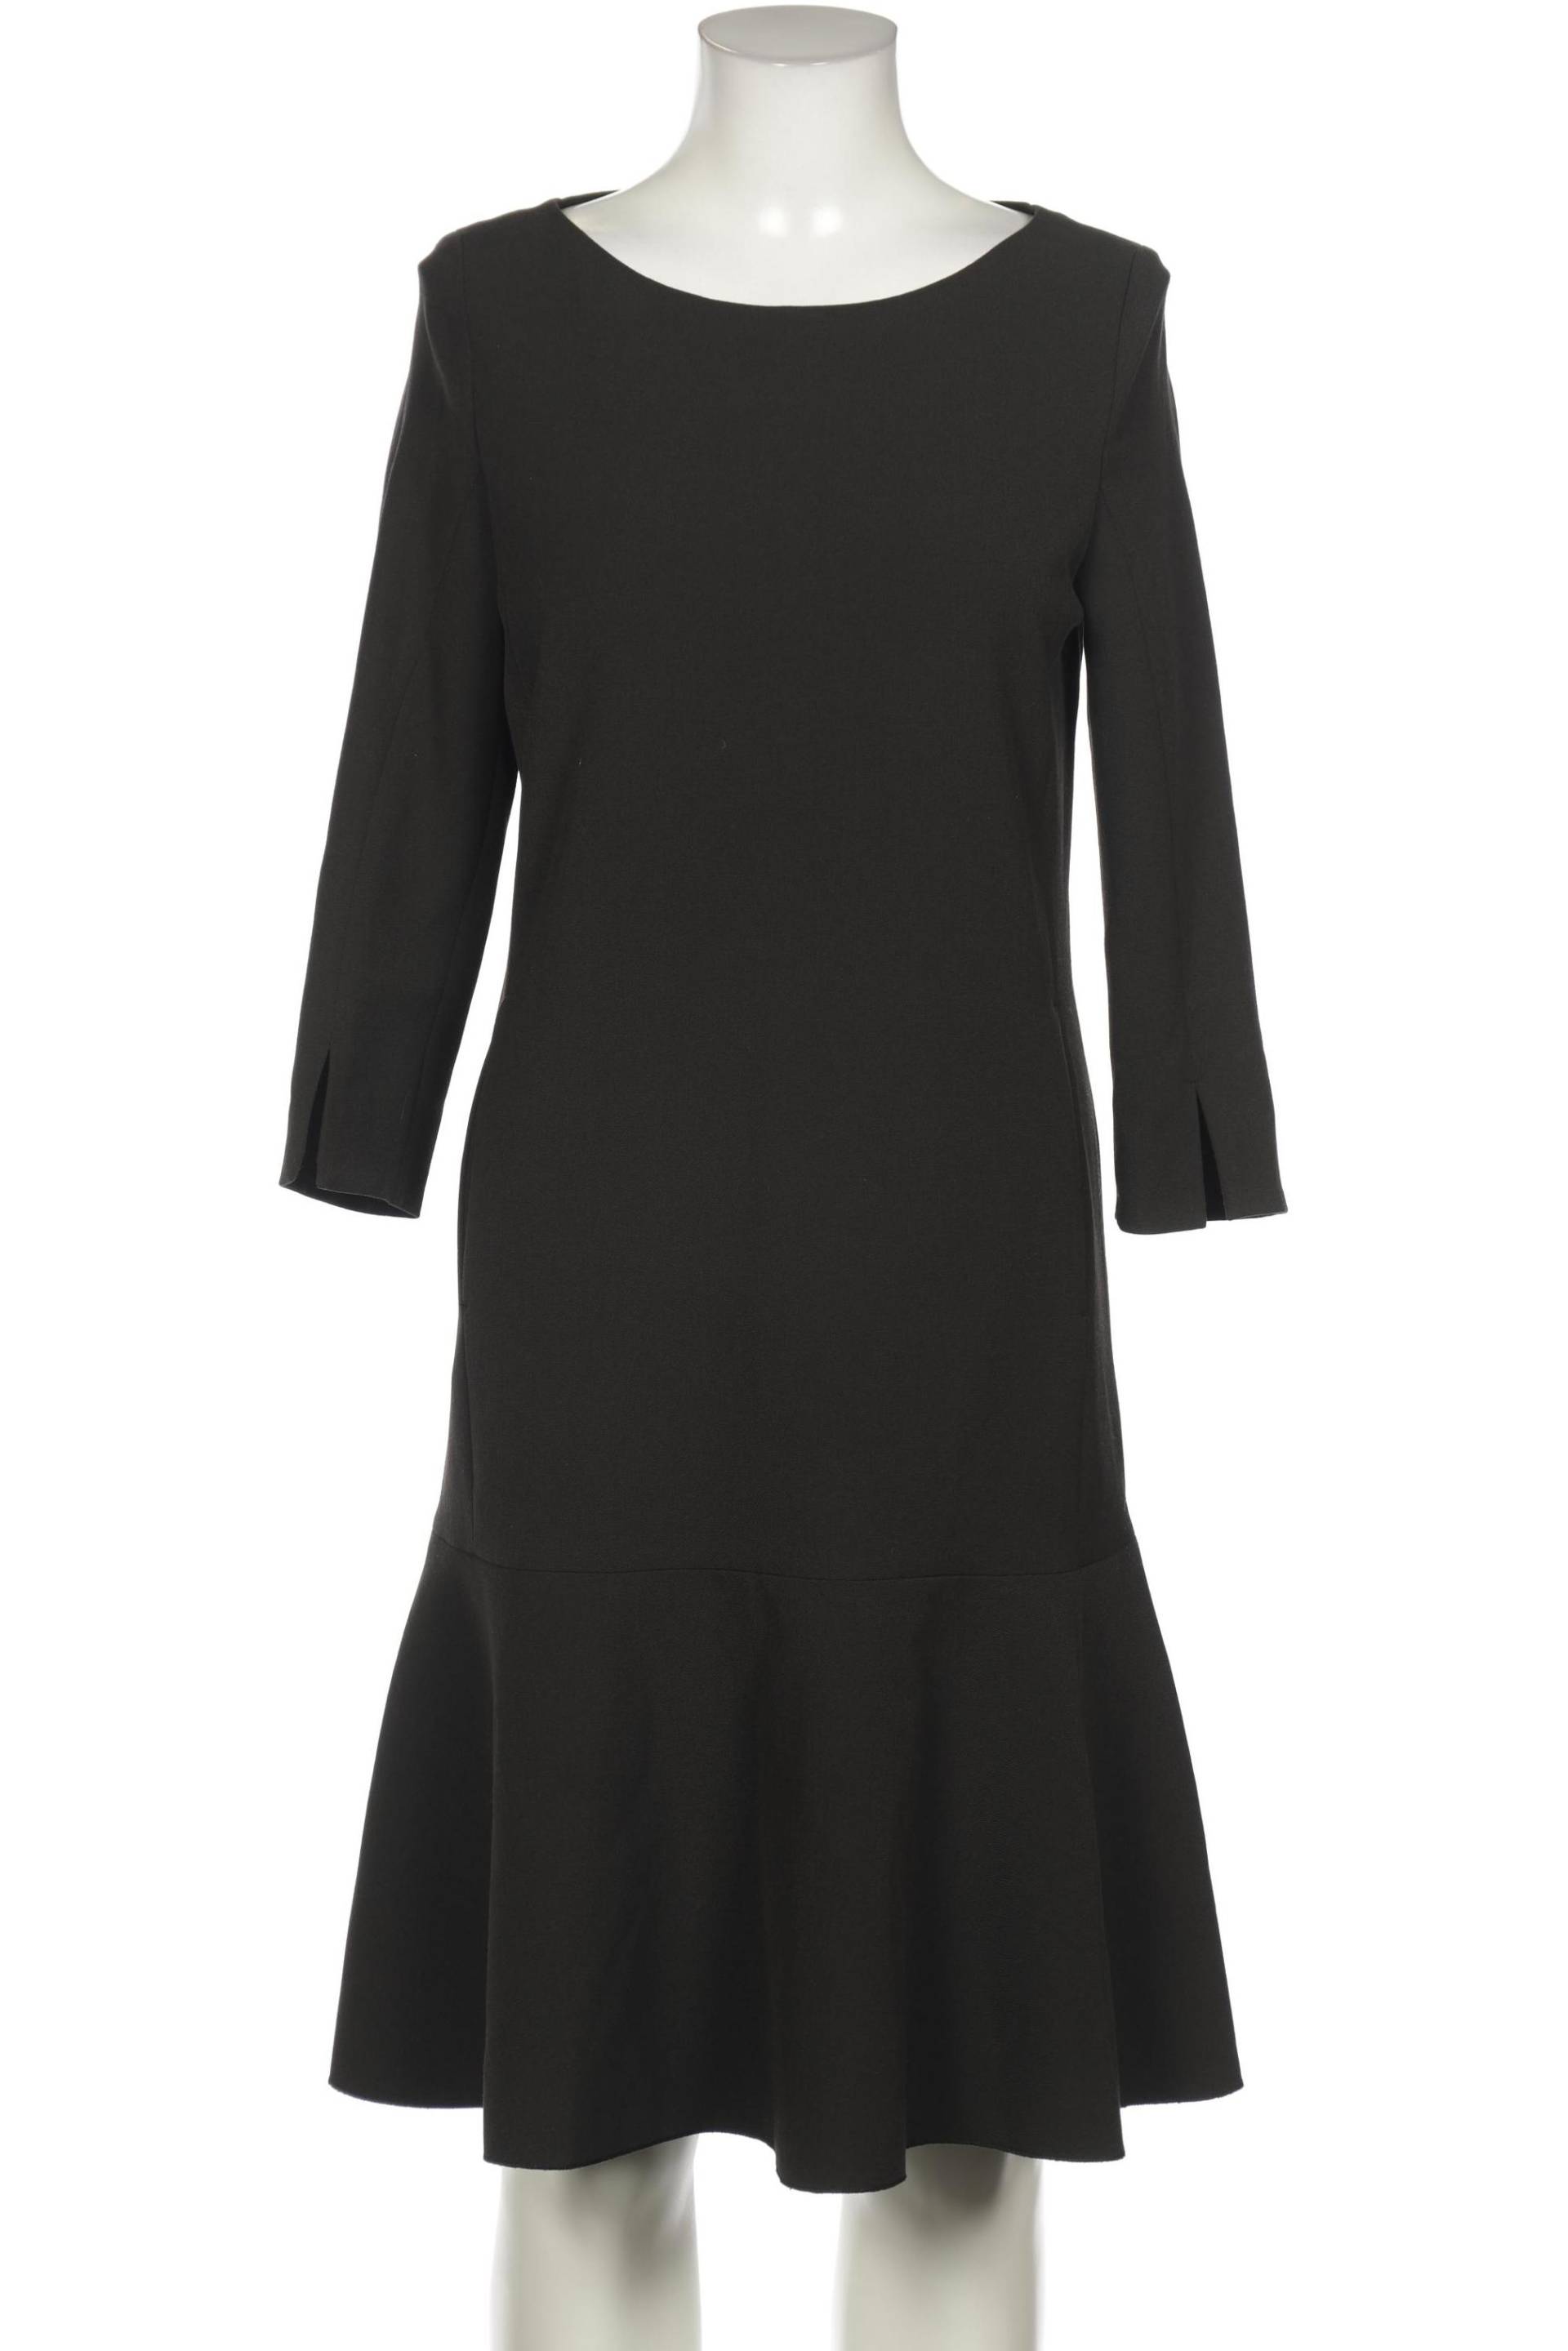 Luisa Cerano Damen Kleid, schwarz, Gr. 36 von LUISA CERANO